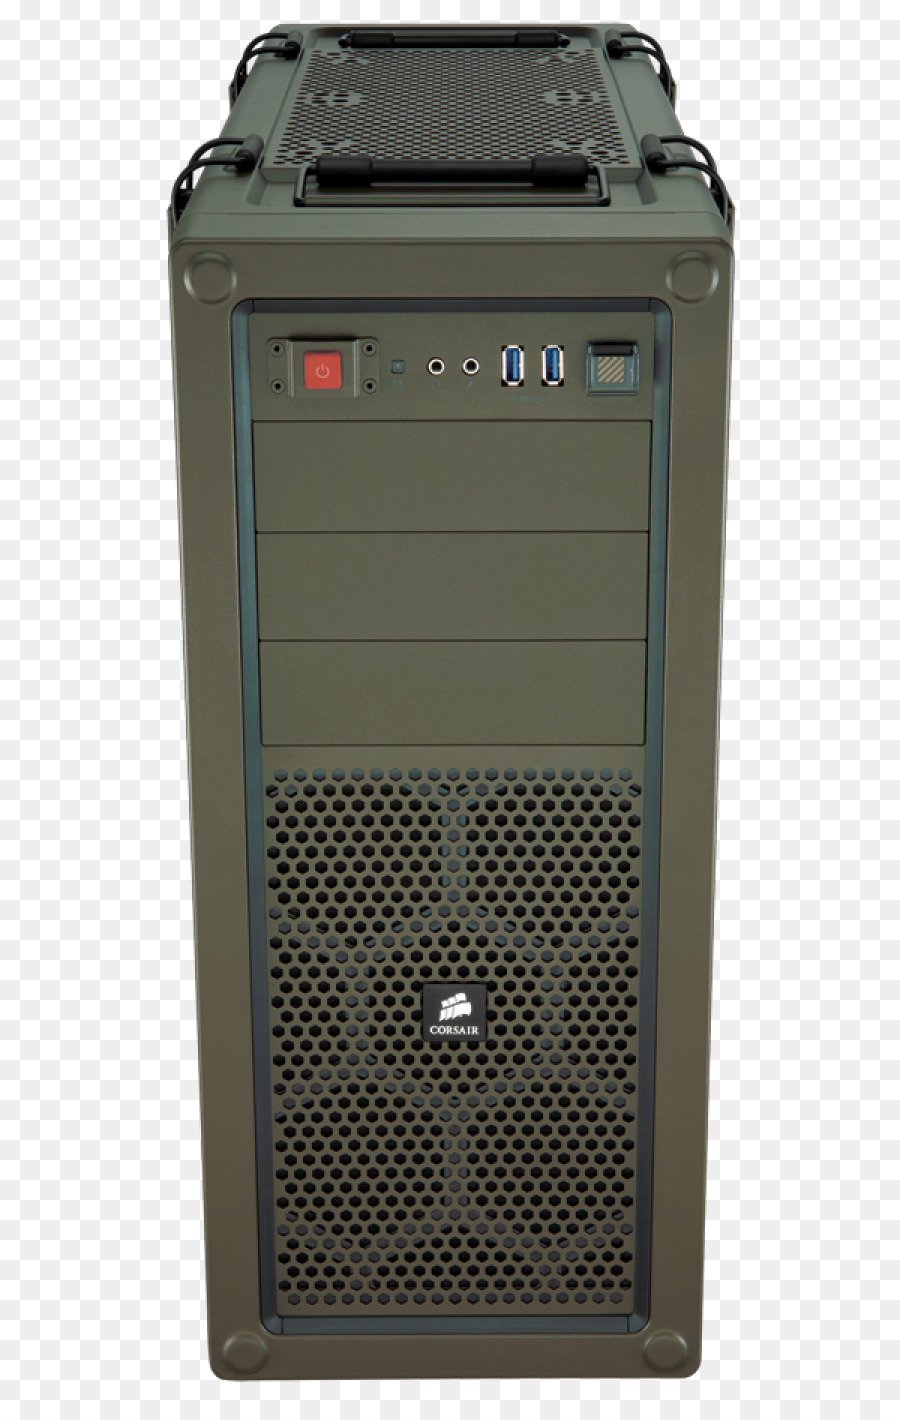 Máy tính trường Hợp, Và Vỏ Bom thành Phần ATC máy tính Cá nhân Thermaltake - cướp biển